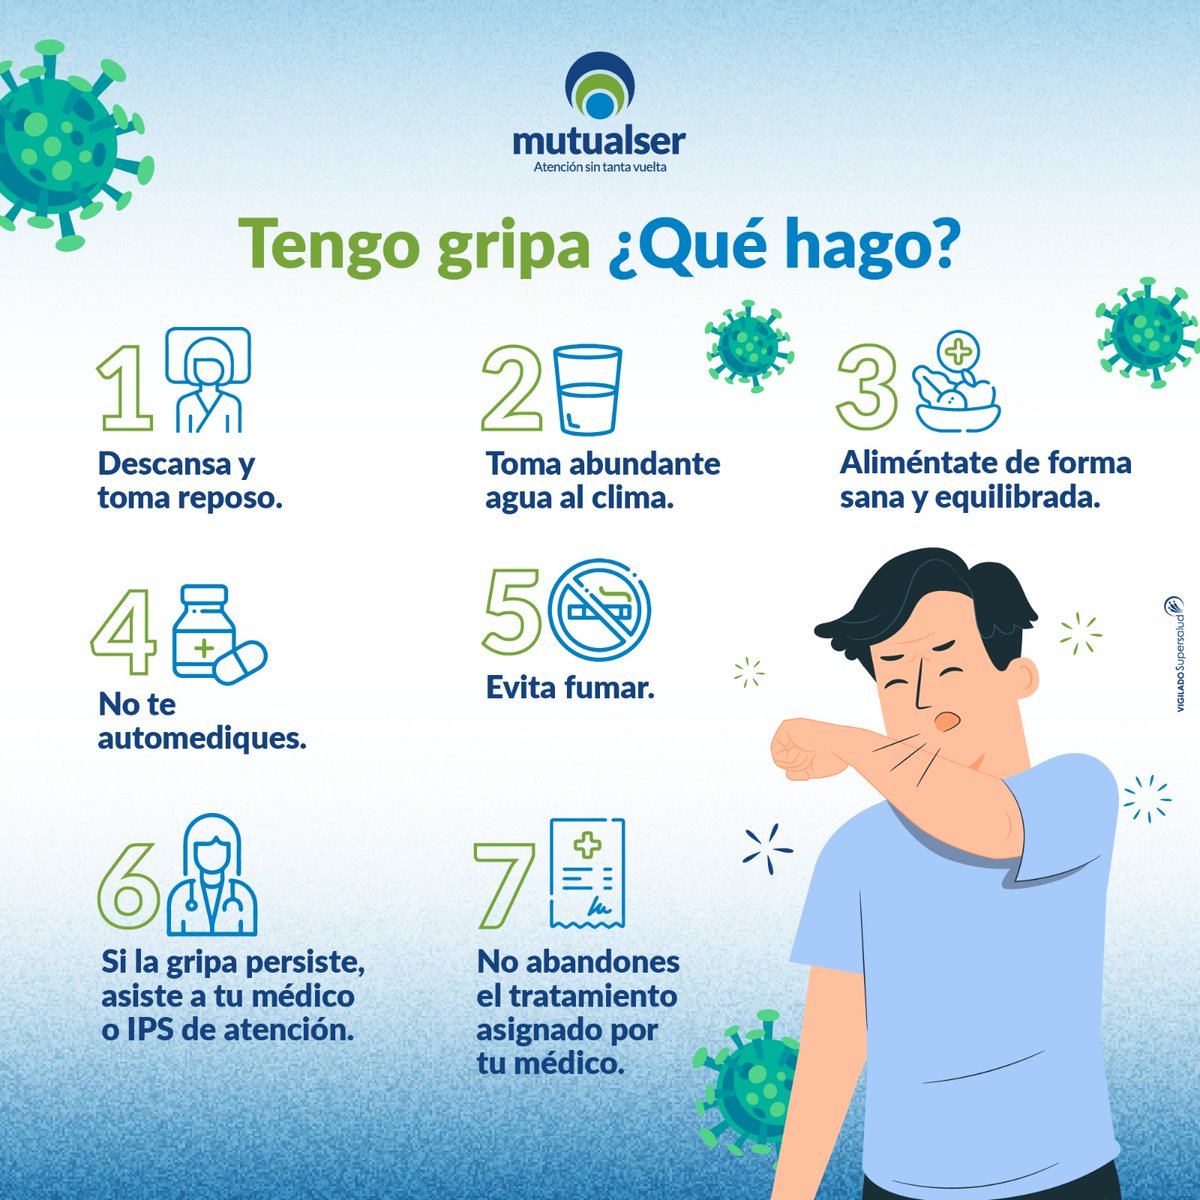 La gripa se propaga fácilmente entre las personas cuando tosen o estornudan. La vacunación es la mejor manera de prevenir la enfermedad. Los síntomas de la gripa son: inicio de fiebre, tos, dolor de garganta, dolor corporal y fatiga. ¡Sigue estas recomendaciones! #mutualser